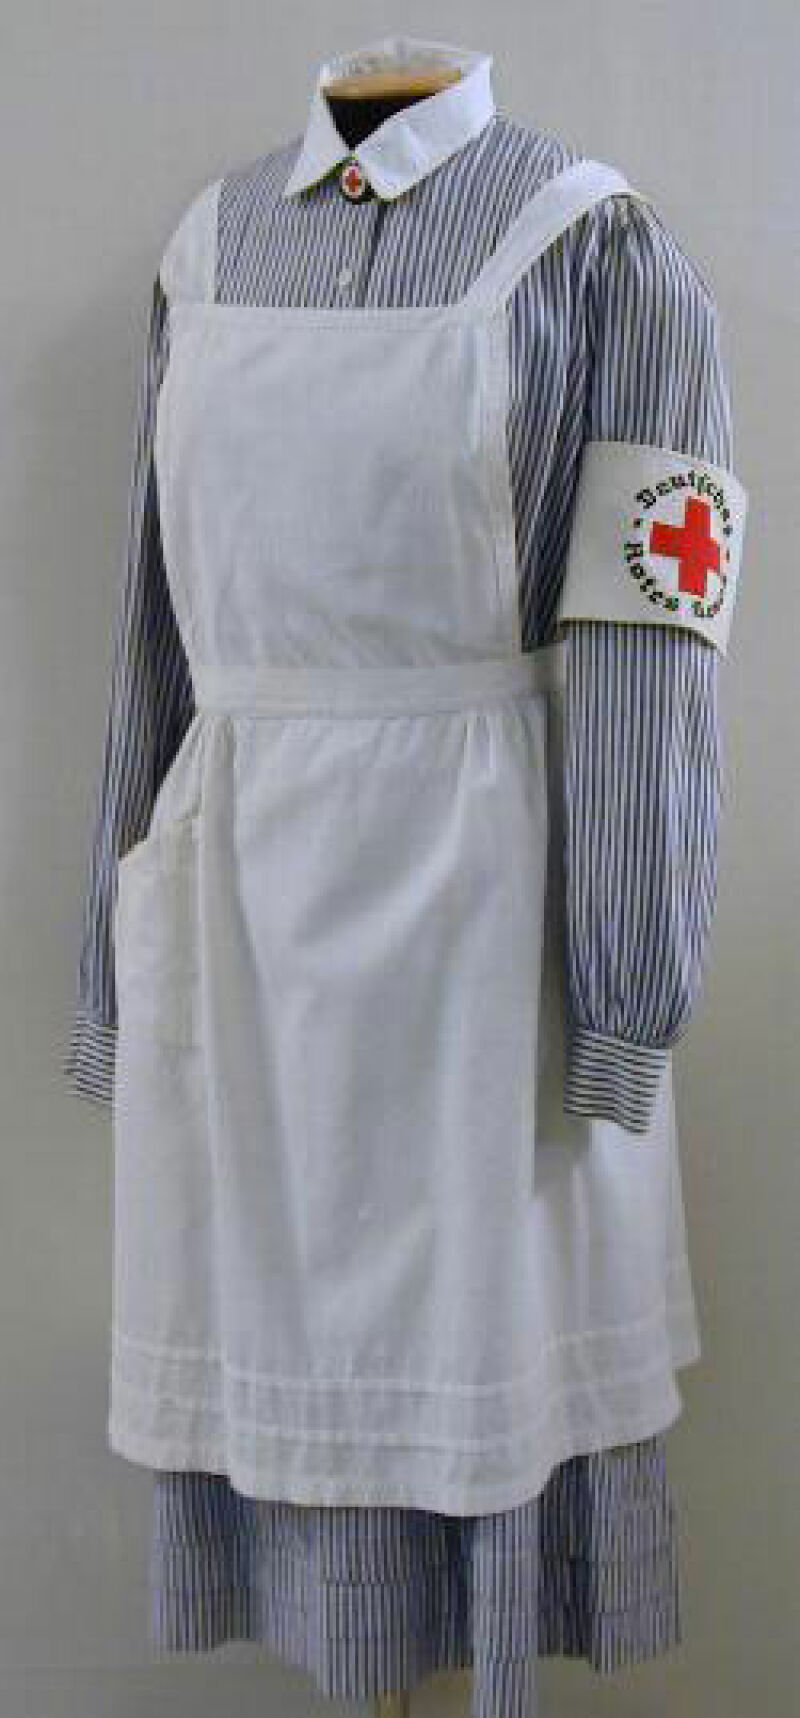 Bild einer Schwesternuniform vom Roten Kreuz